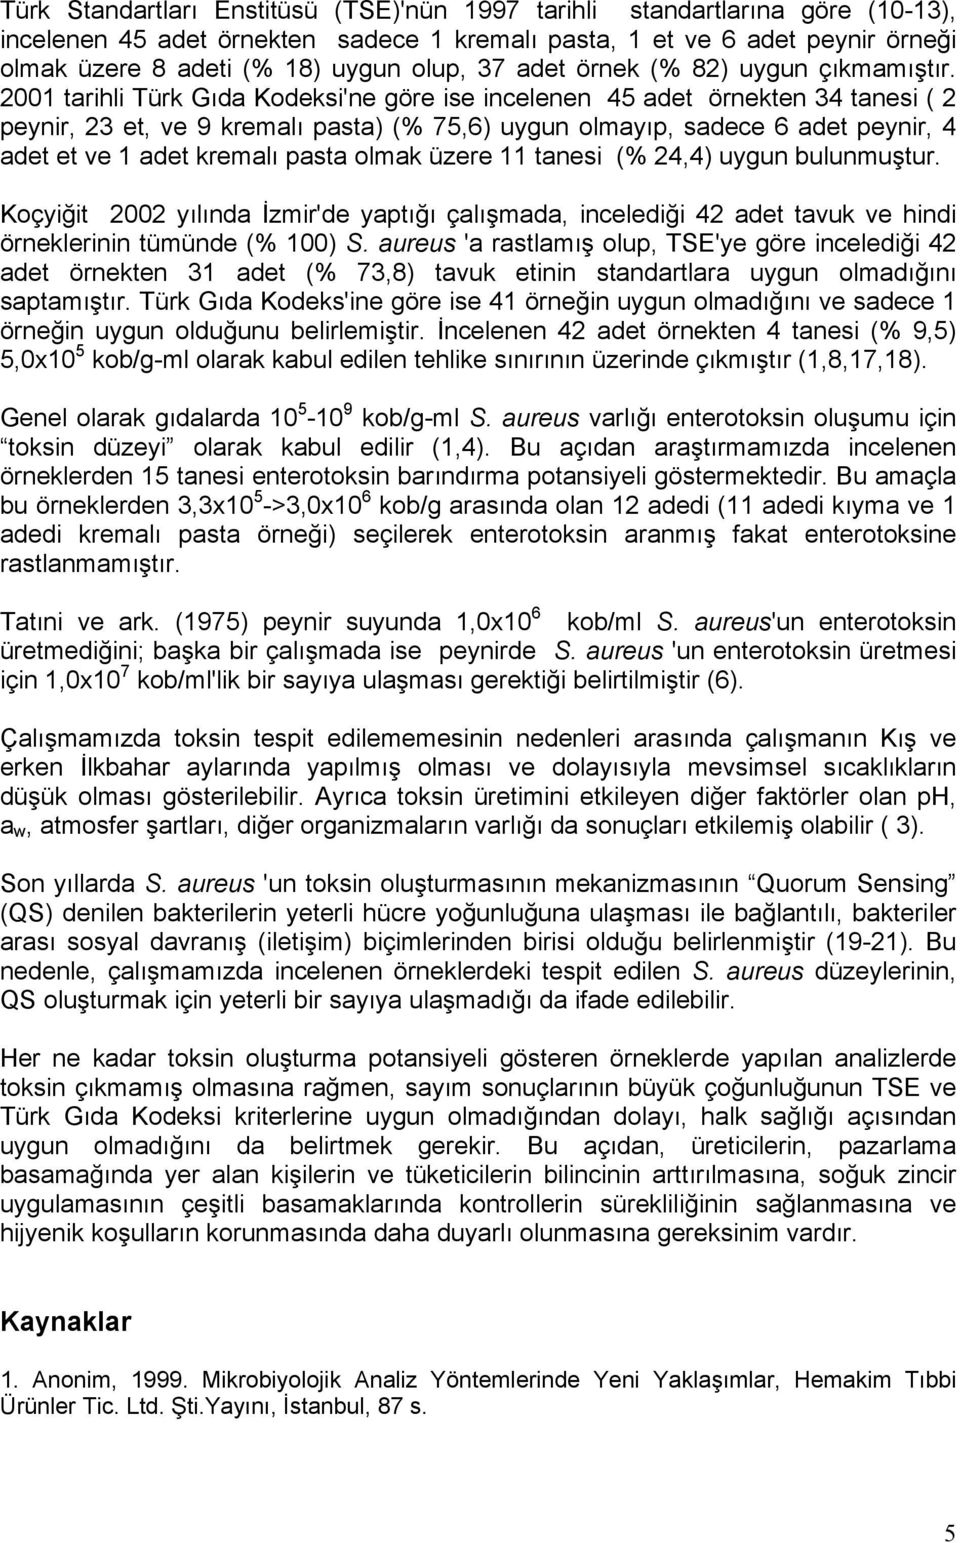 2001 tarihli Türk Gıda Kodeksi'ne göre ise incelenen 45 adet örnekten 34 tanesi ( 2 peynir, 23 et, ve 9 kremalı pasta) (% 75,6) uygun olmayıp, sadece 6 adet peynir, 4 adet et ve 1 adet kremalı pasta